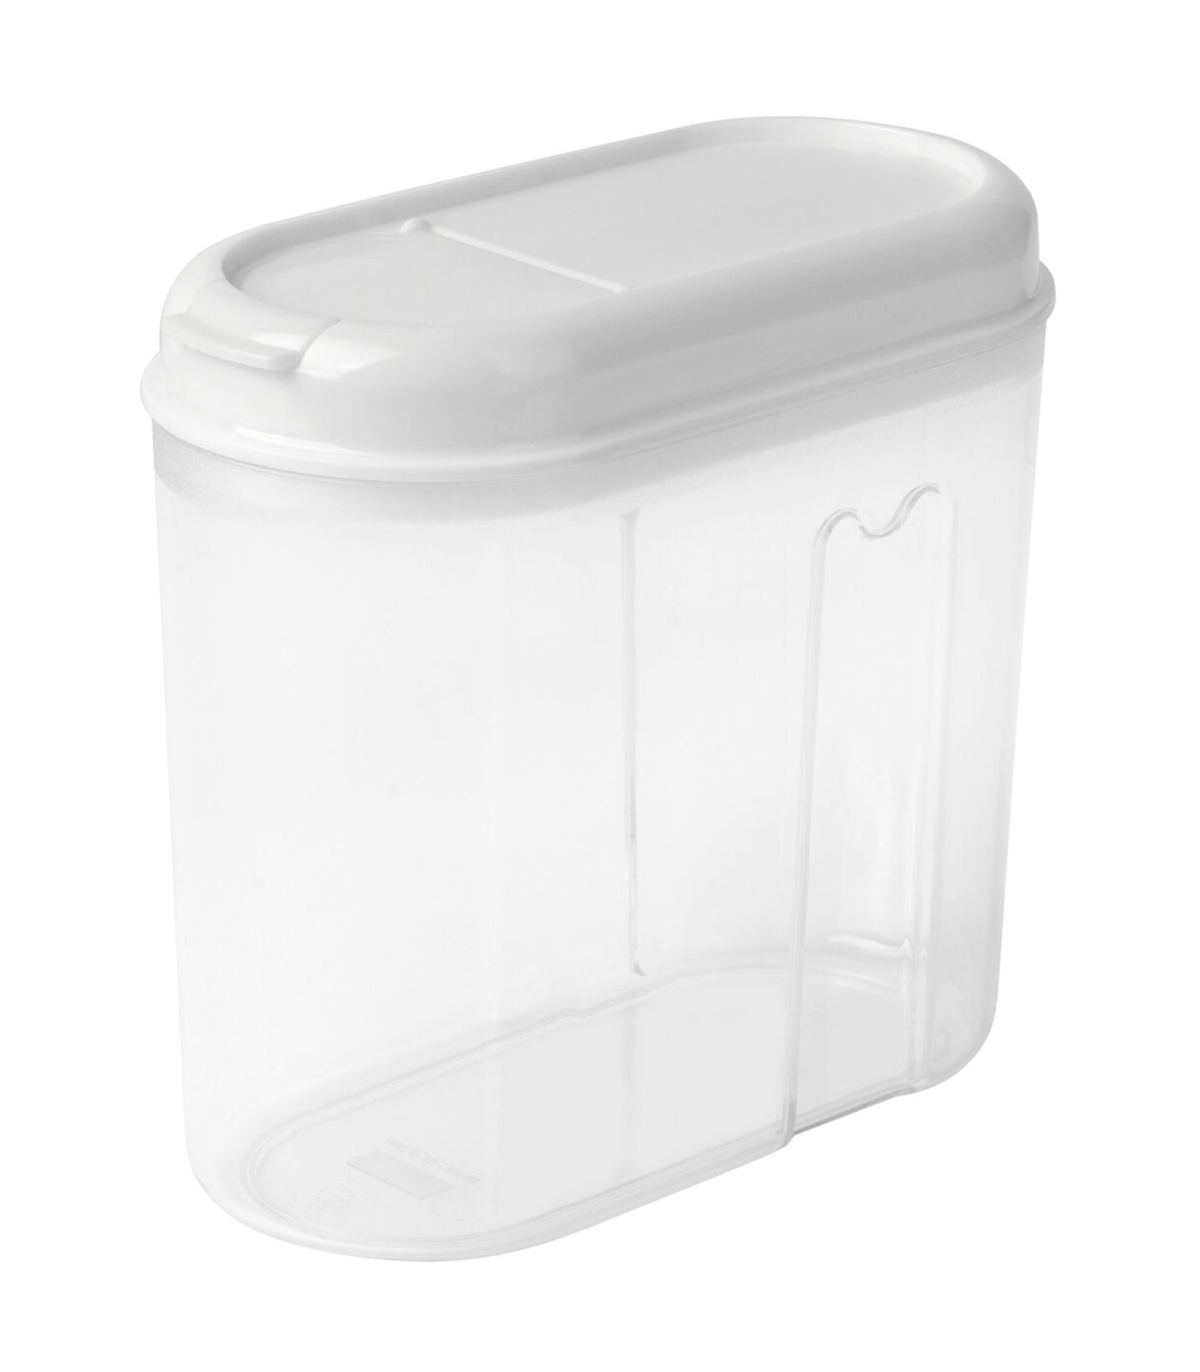 Tradineur - Recipiente reutilizable de plástico con tapa, bote de almacenaje,  pasta, legumbres, cereales, frutos secos, café, fa